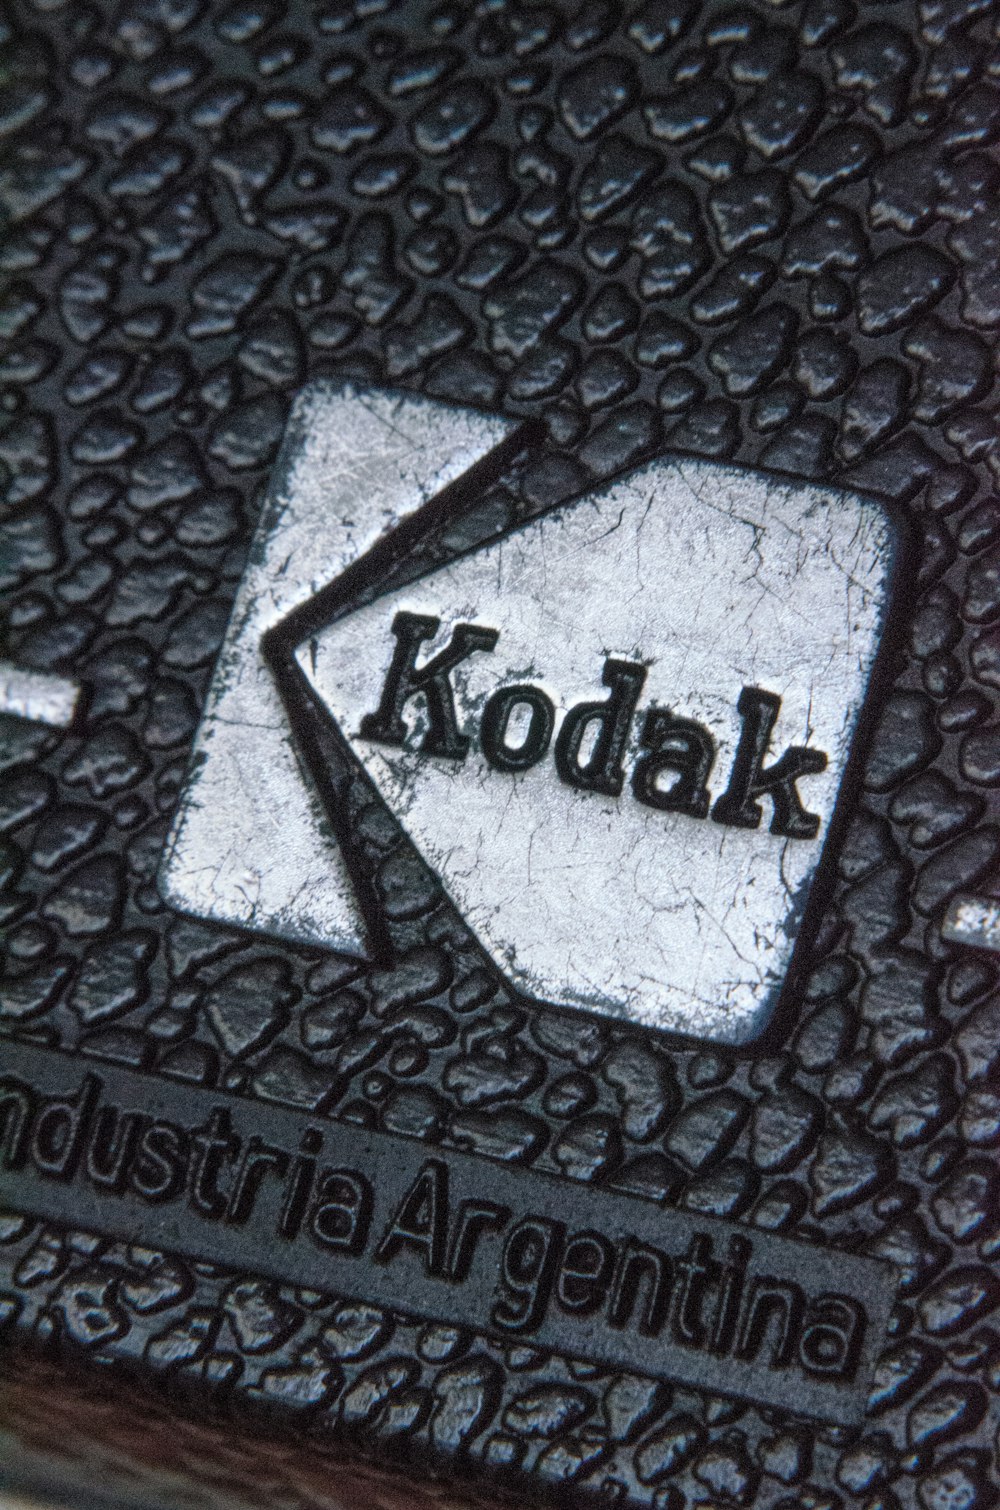 a close up of a kodak logo on a black background